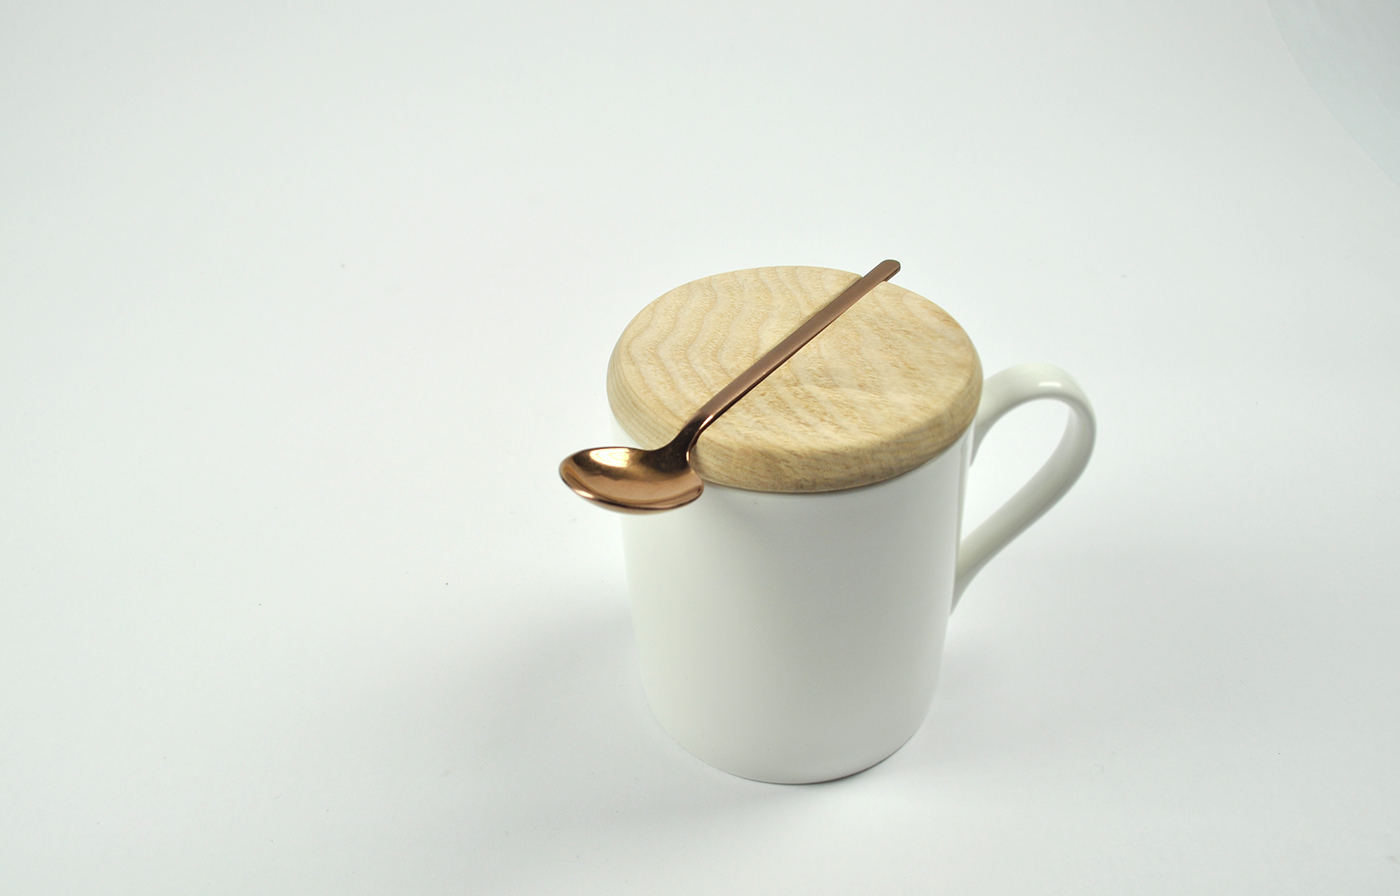 industrial design  product design  cup Mug  lids Behavior wood